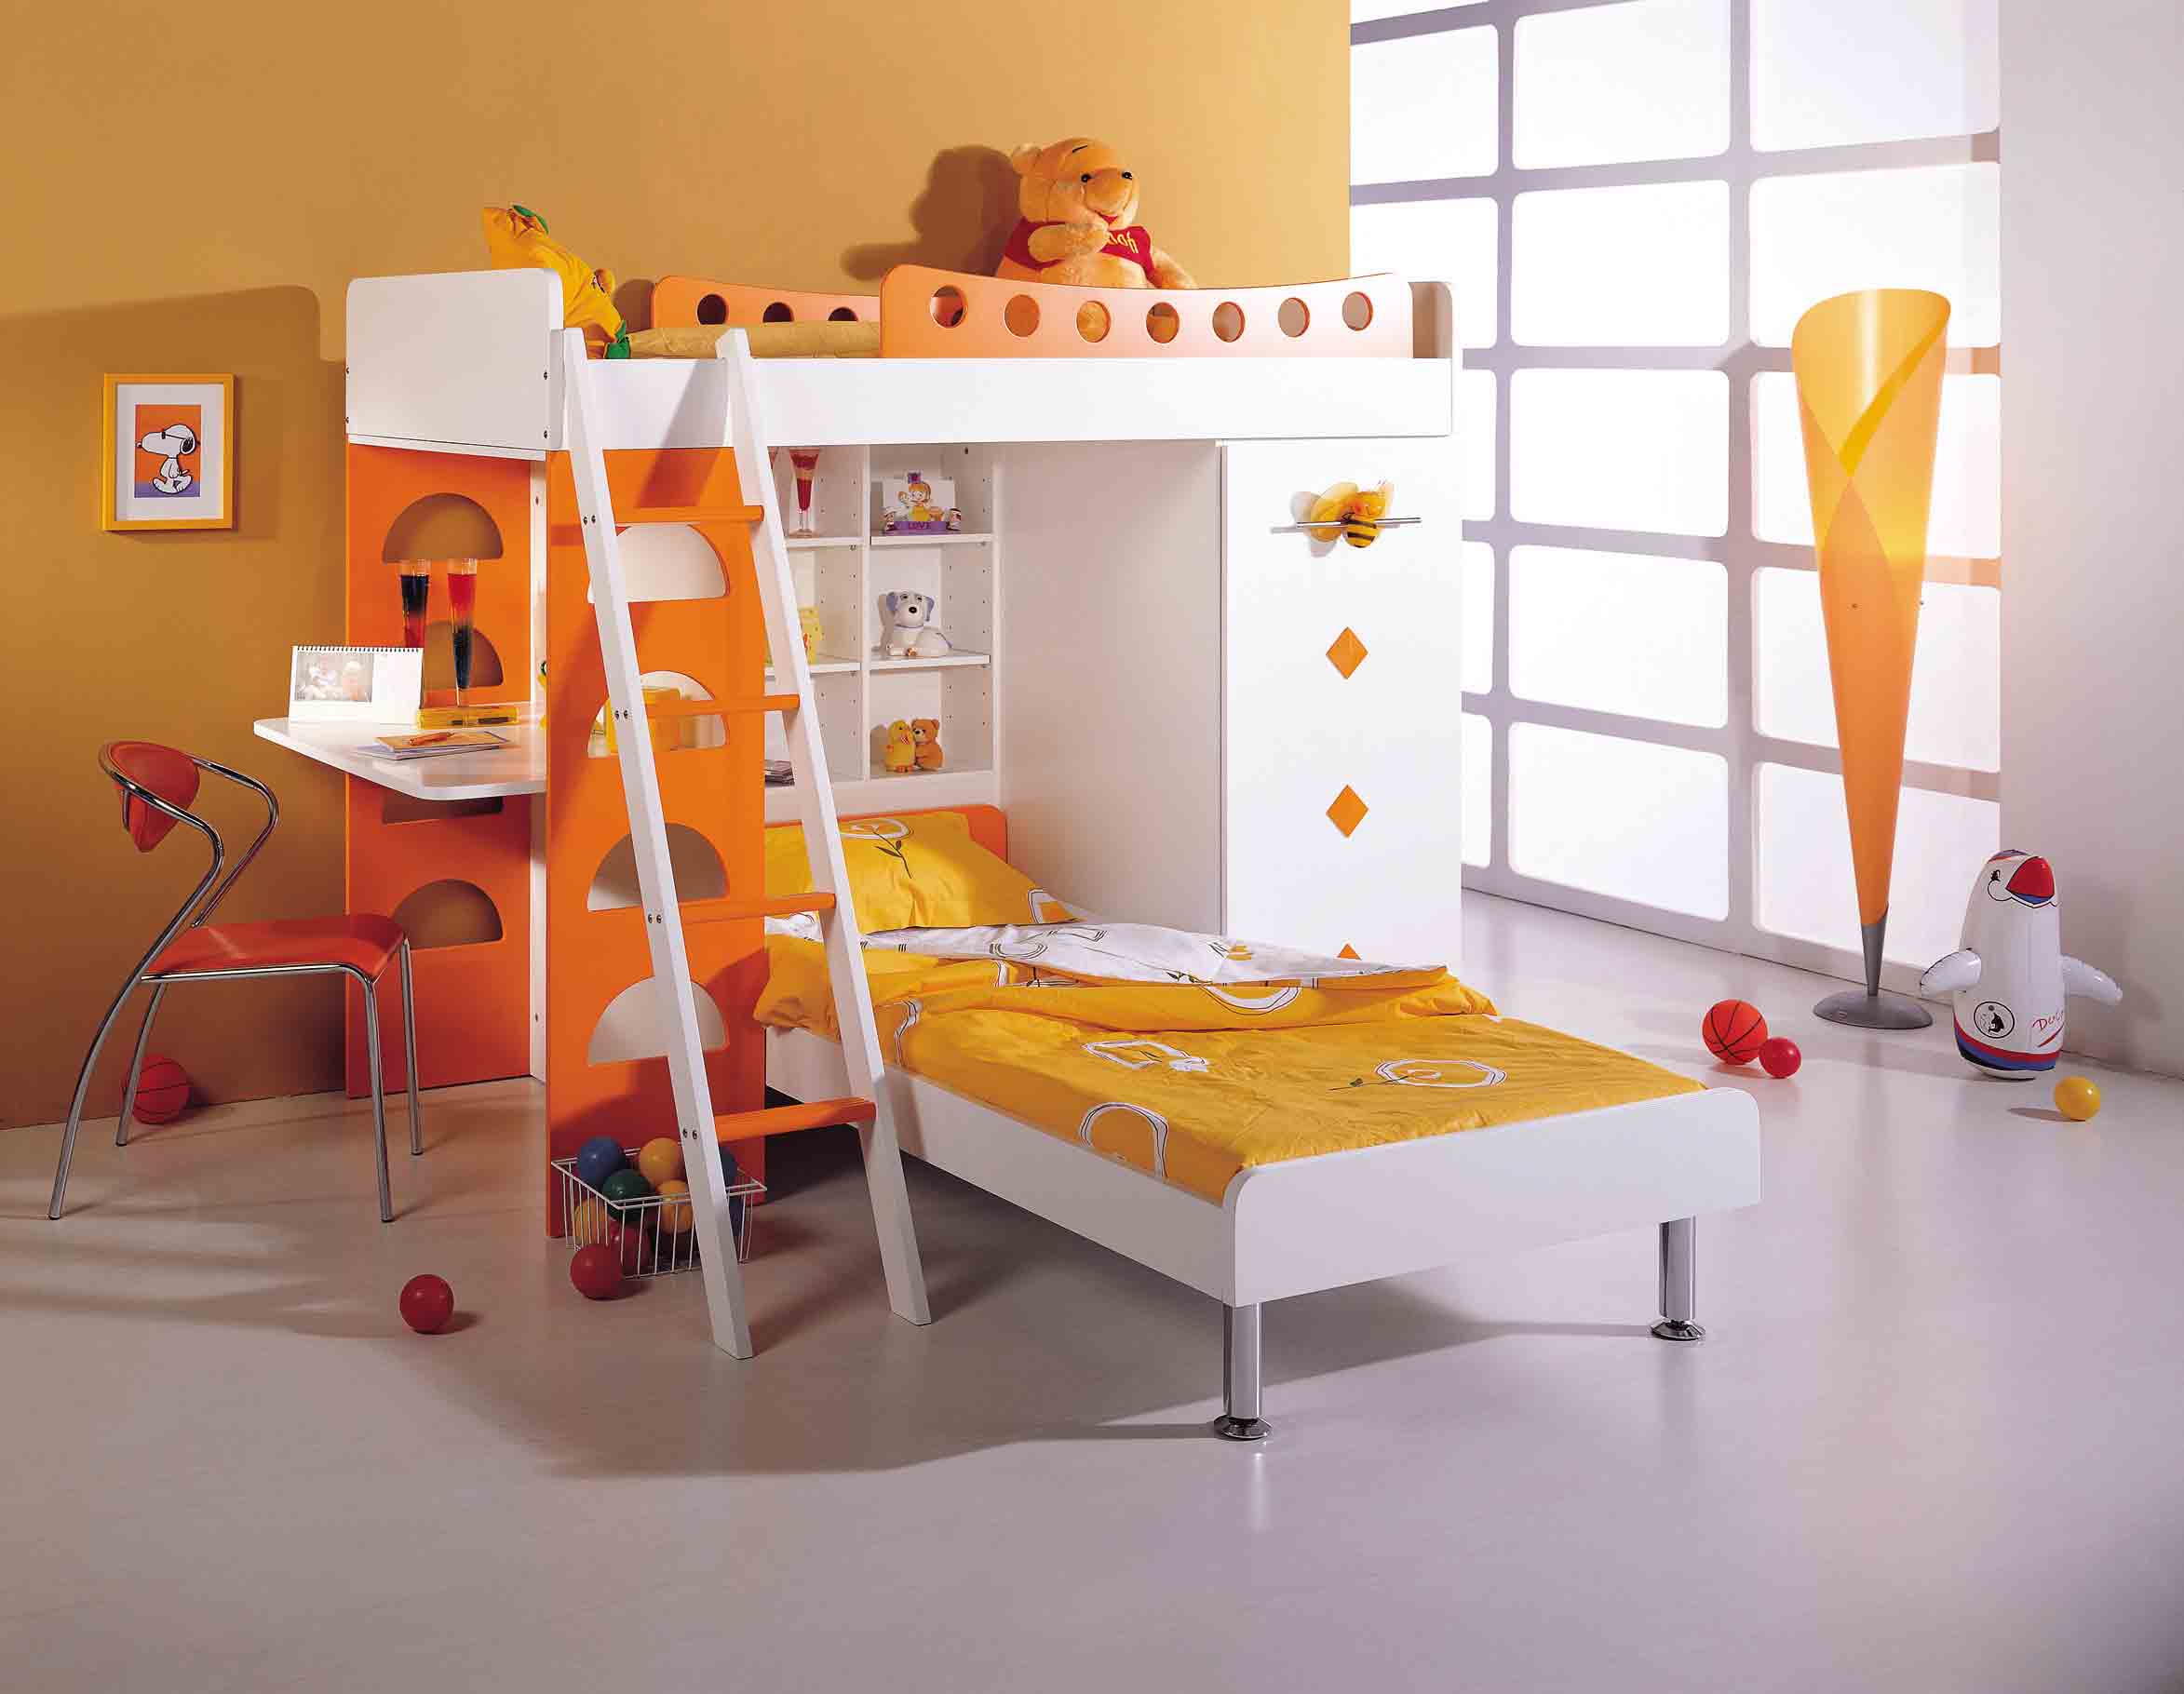 kids-bedroom-bunk-beds-inspiration-decoration-on-bedroom-design-ideas